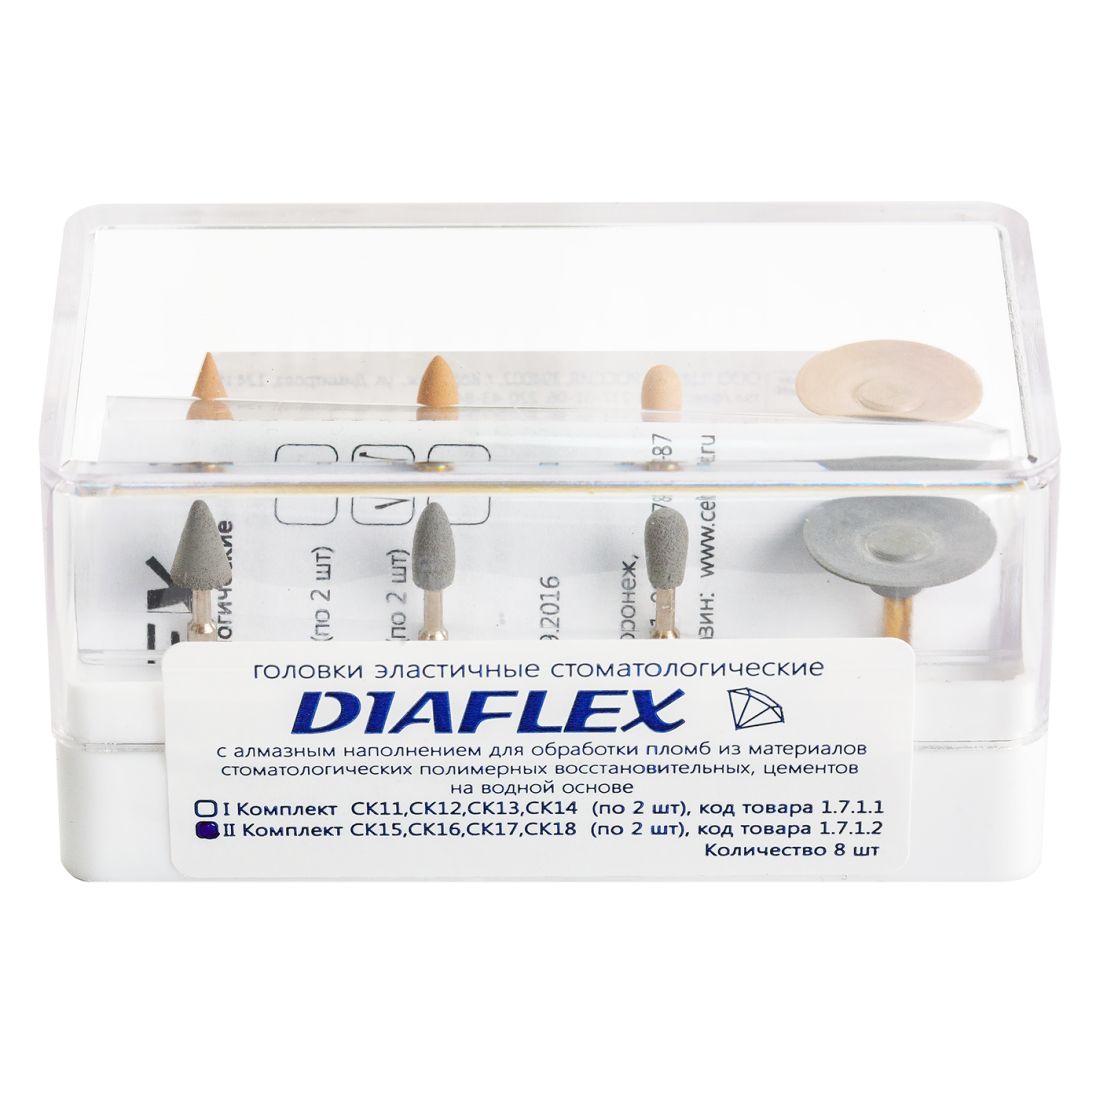 Diaflex композит - головки Диафлекс для обработки композитов набор №1 (8шт)